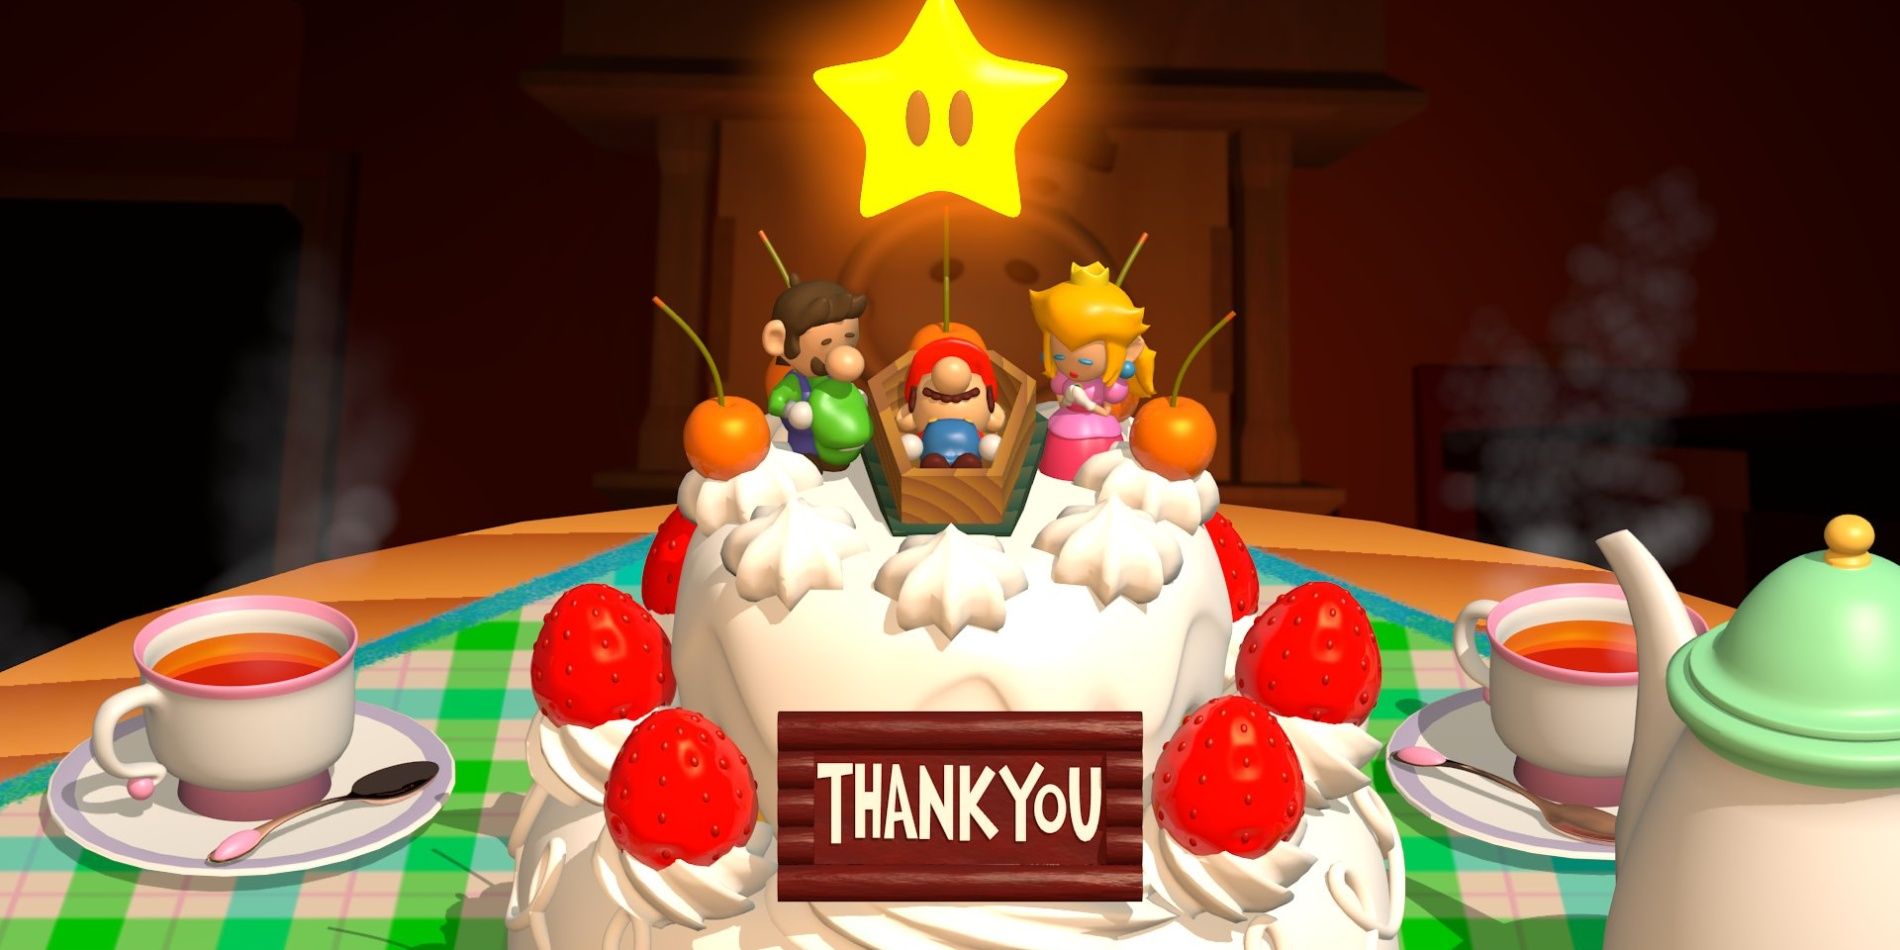 Thank You Mario